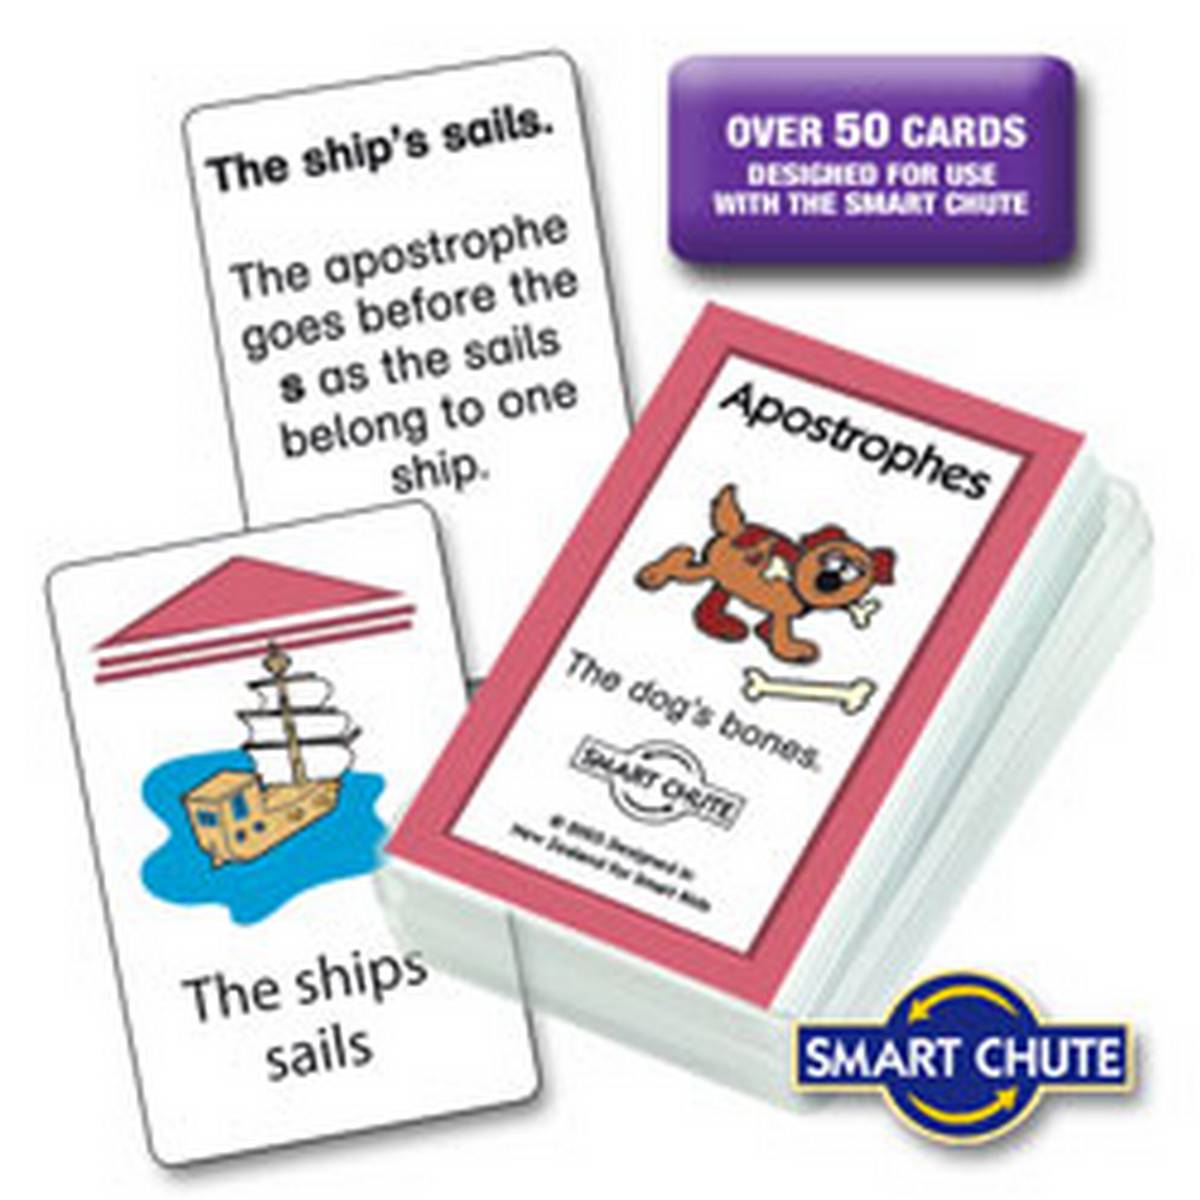 Apostrophes Chute Cards